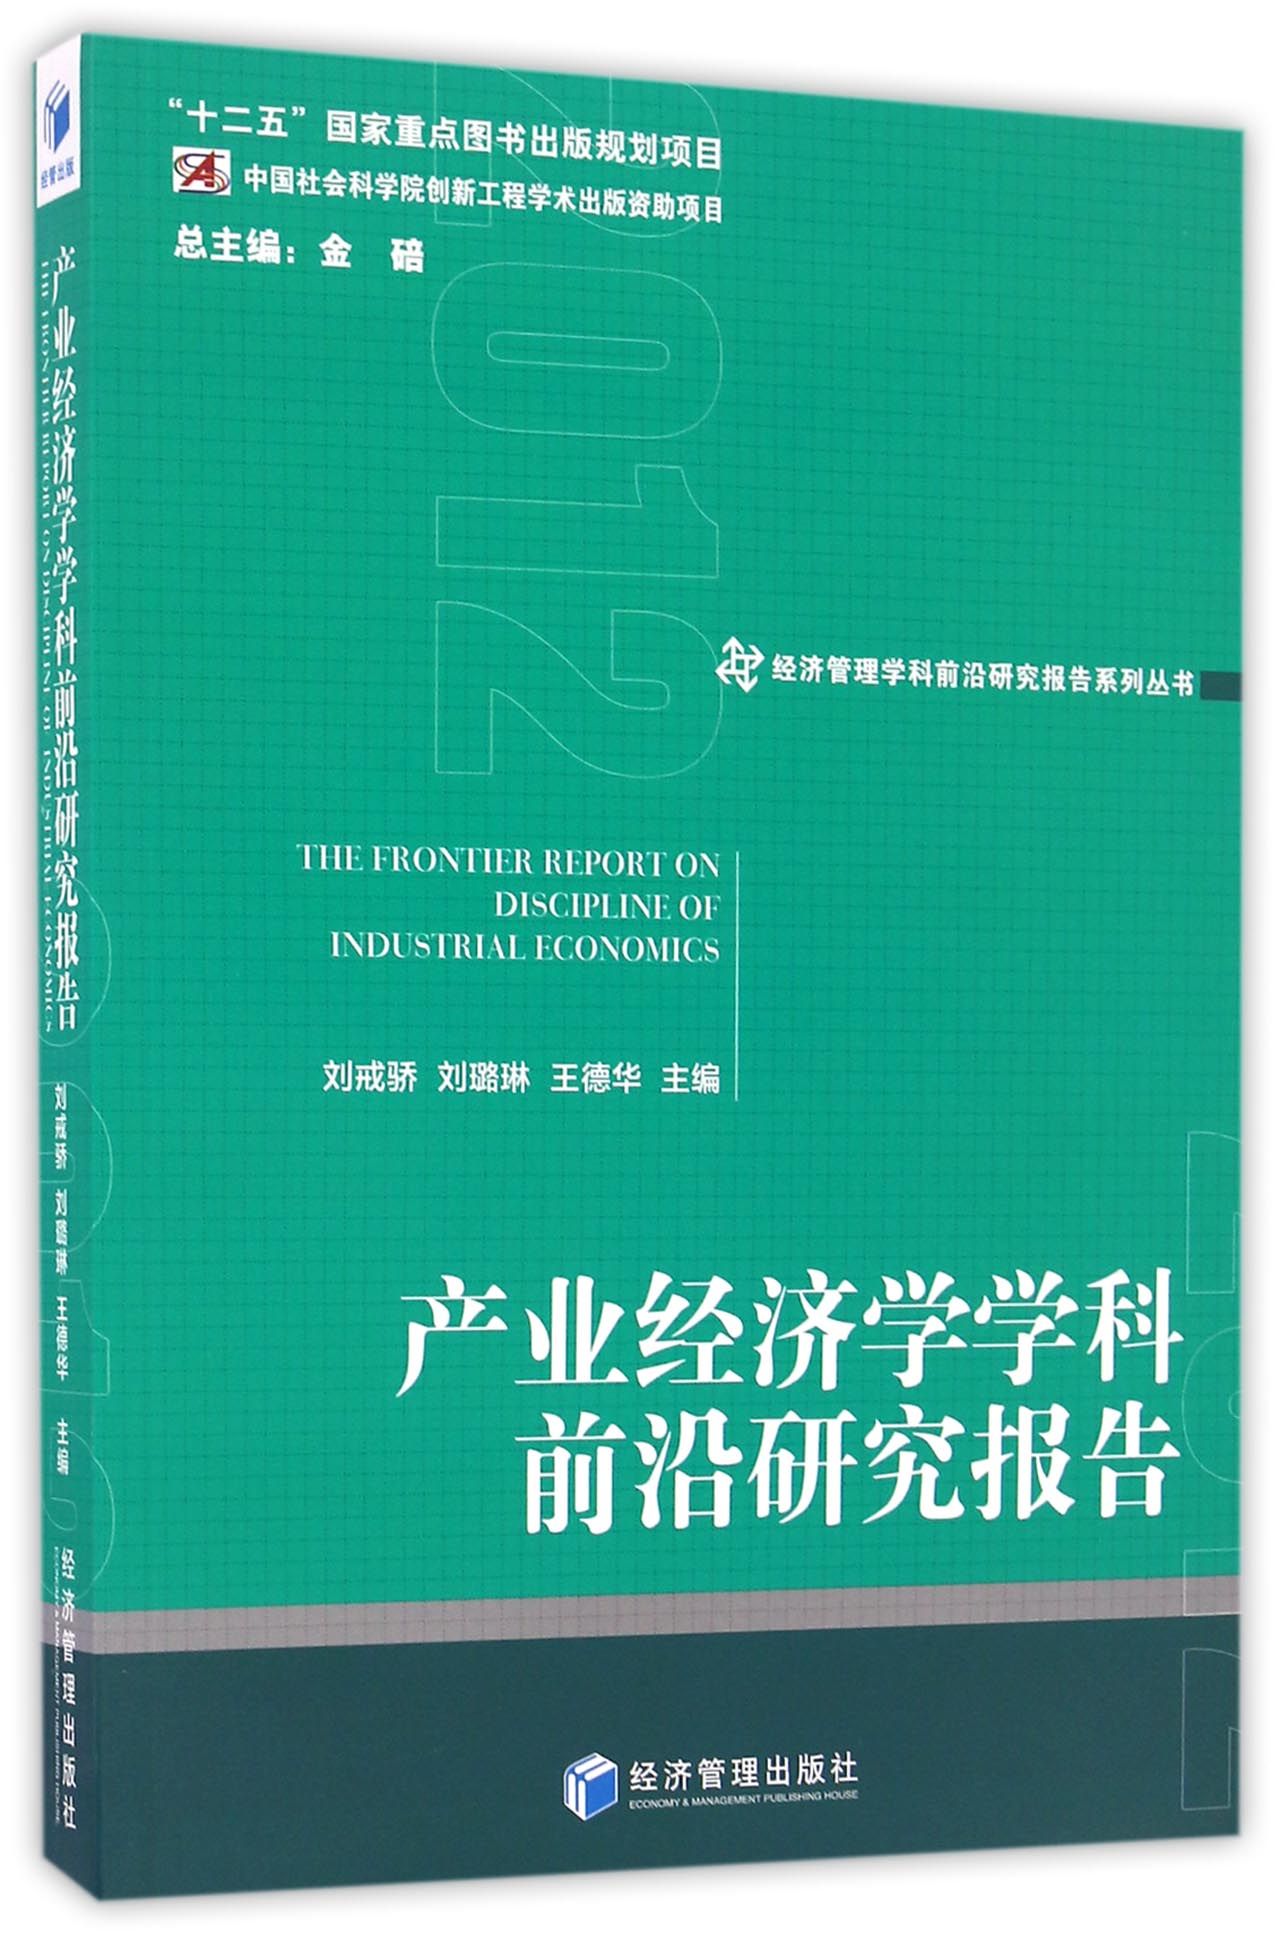 产业经济学学科前沿研究报告 = The frontier report on discipline of industrial economics. 2012 / 刘戒骄, 刘璐琳, 王德华 主编